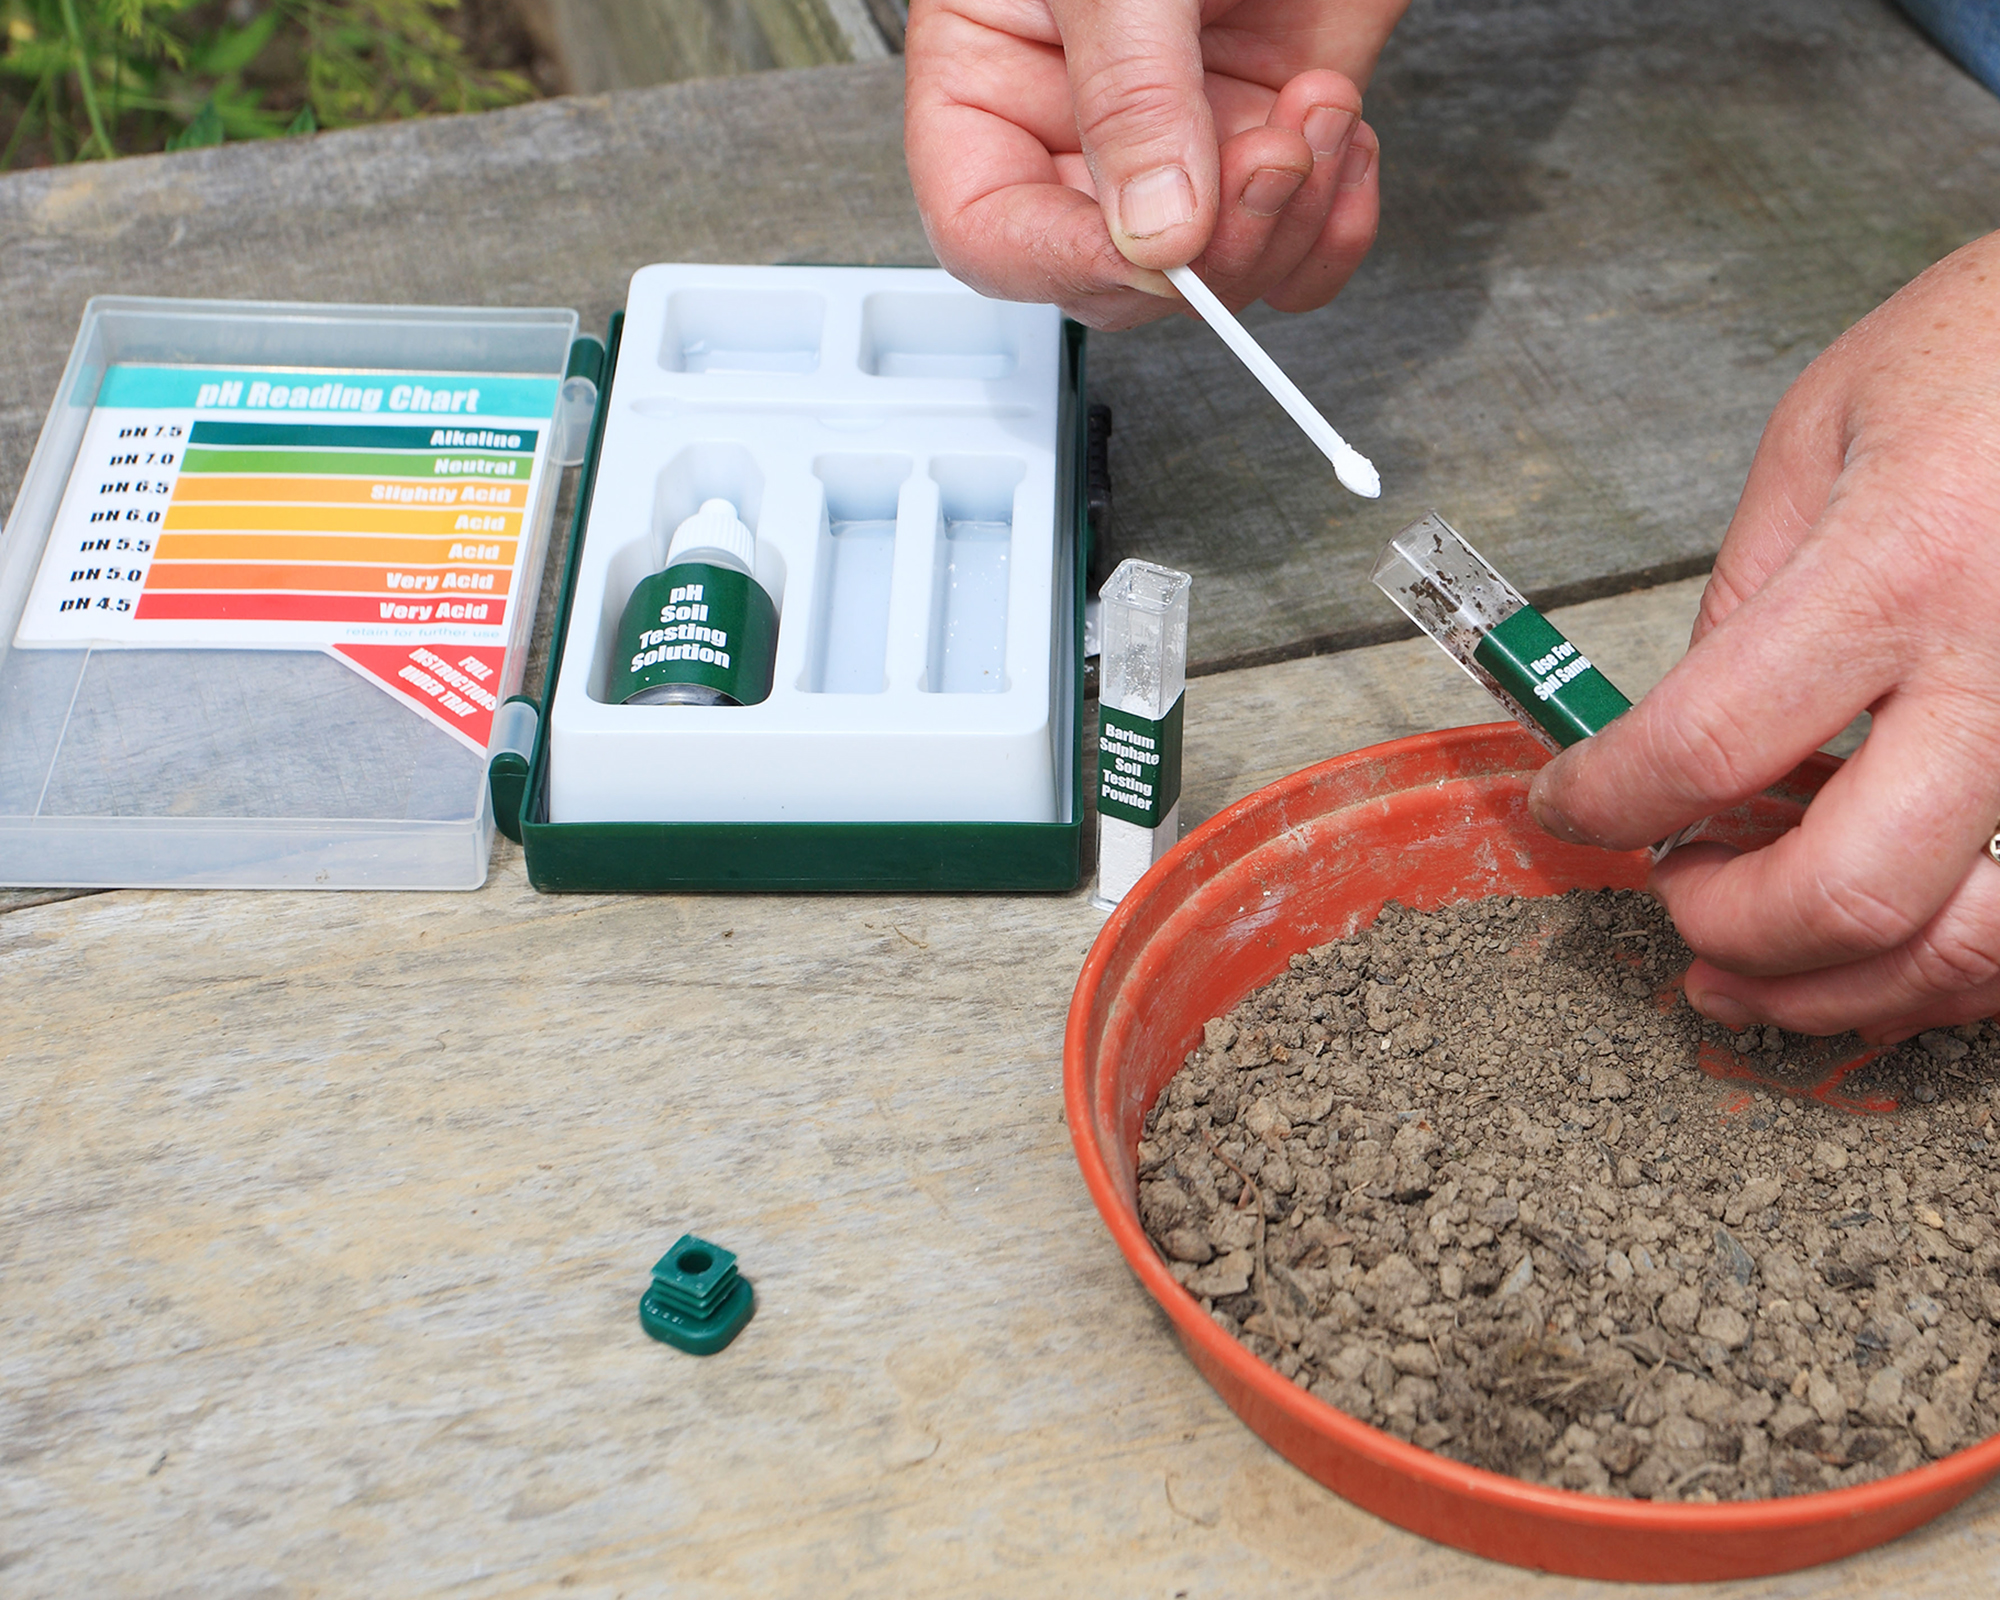 Soil testing kit